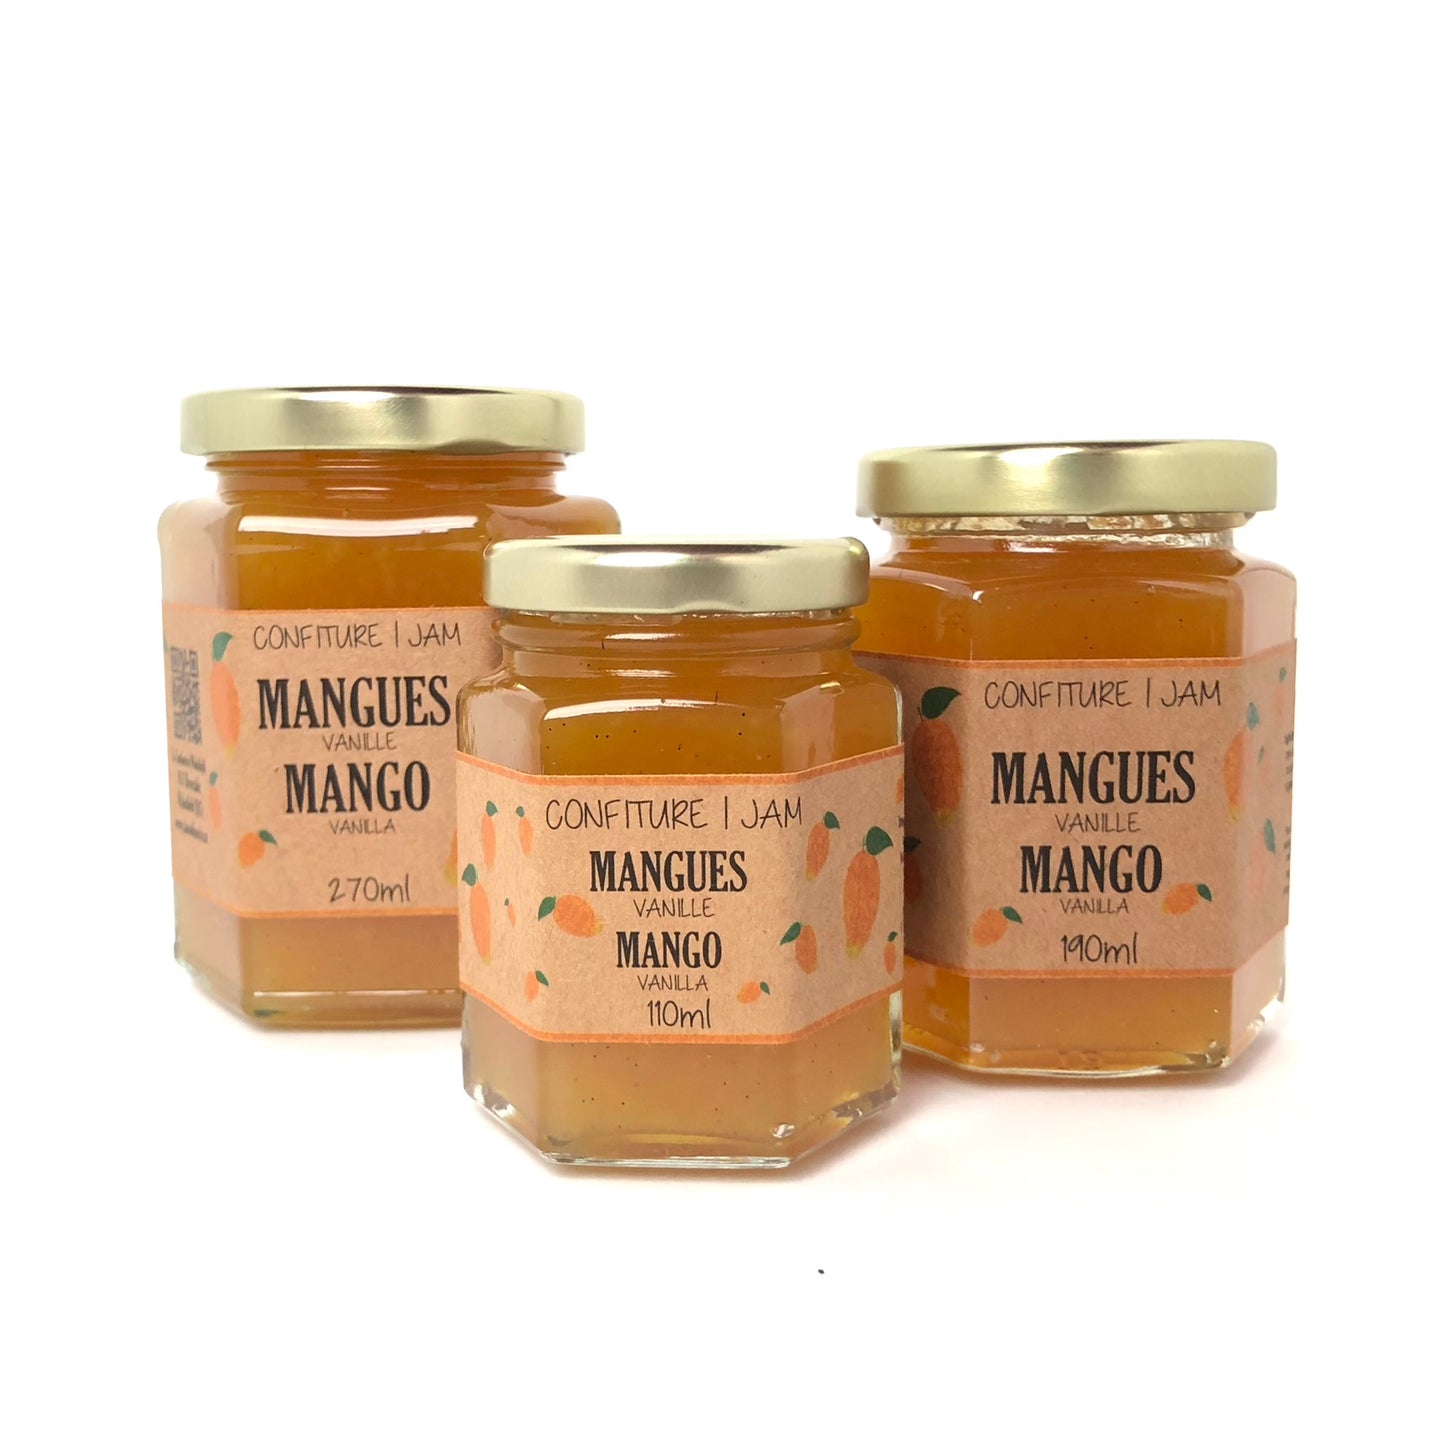 Mango and vanilla jam